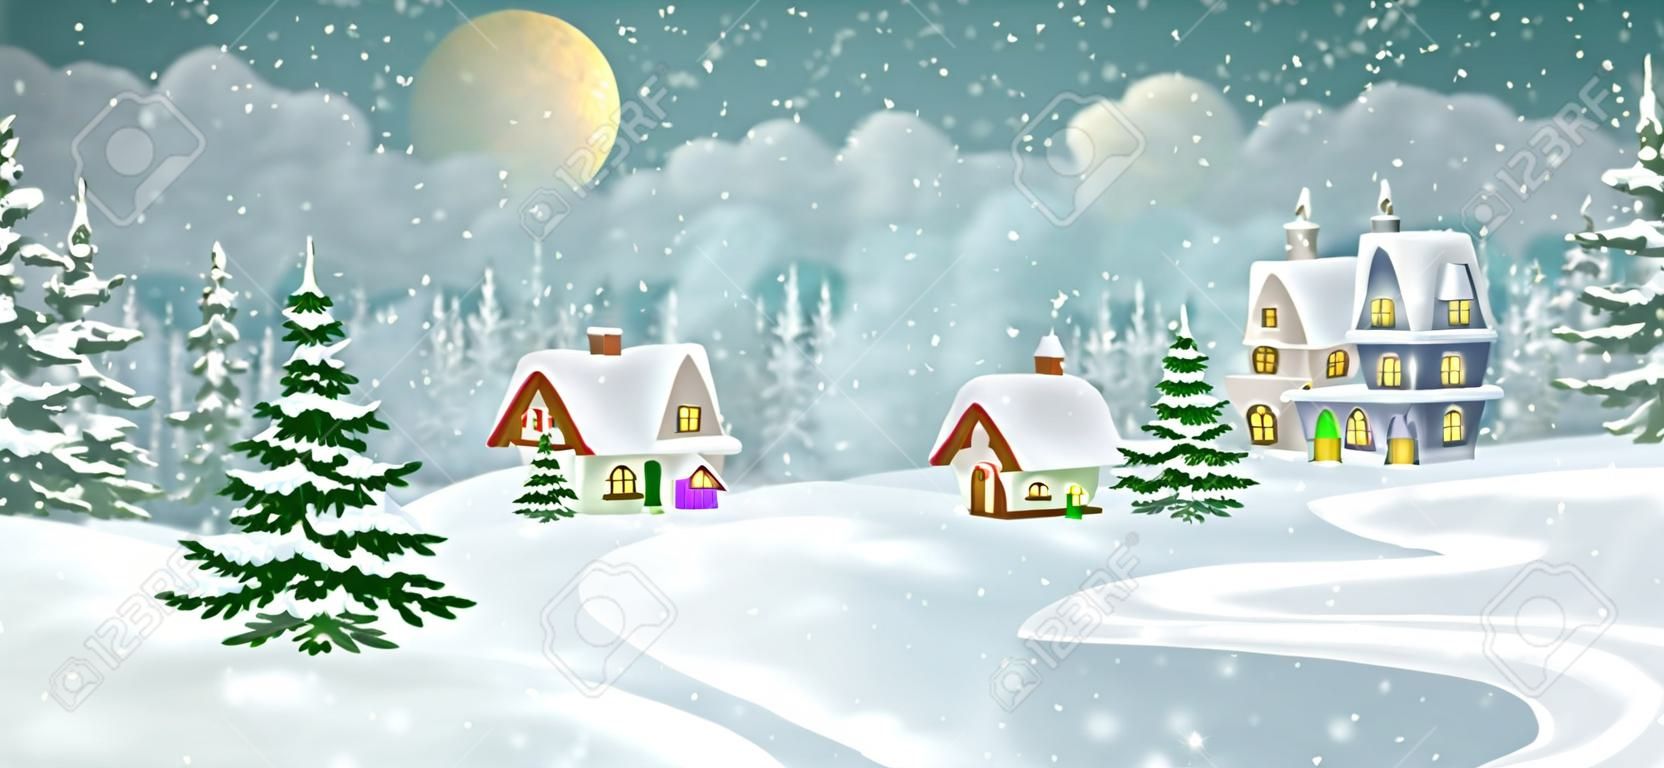 冬天与松树林的村庄风景。小的童话般的房子被雪覆盖着。